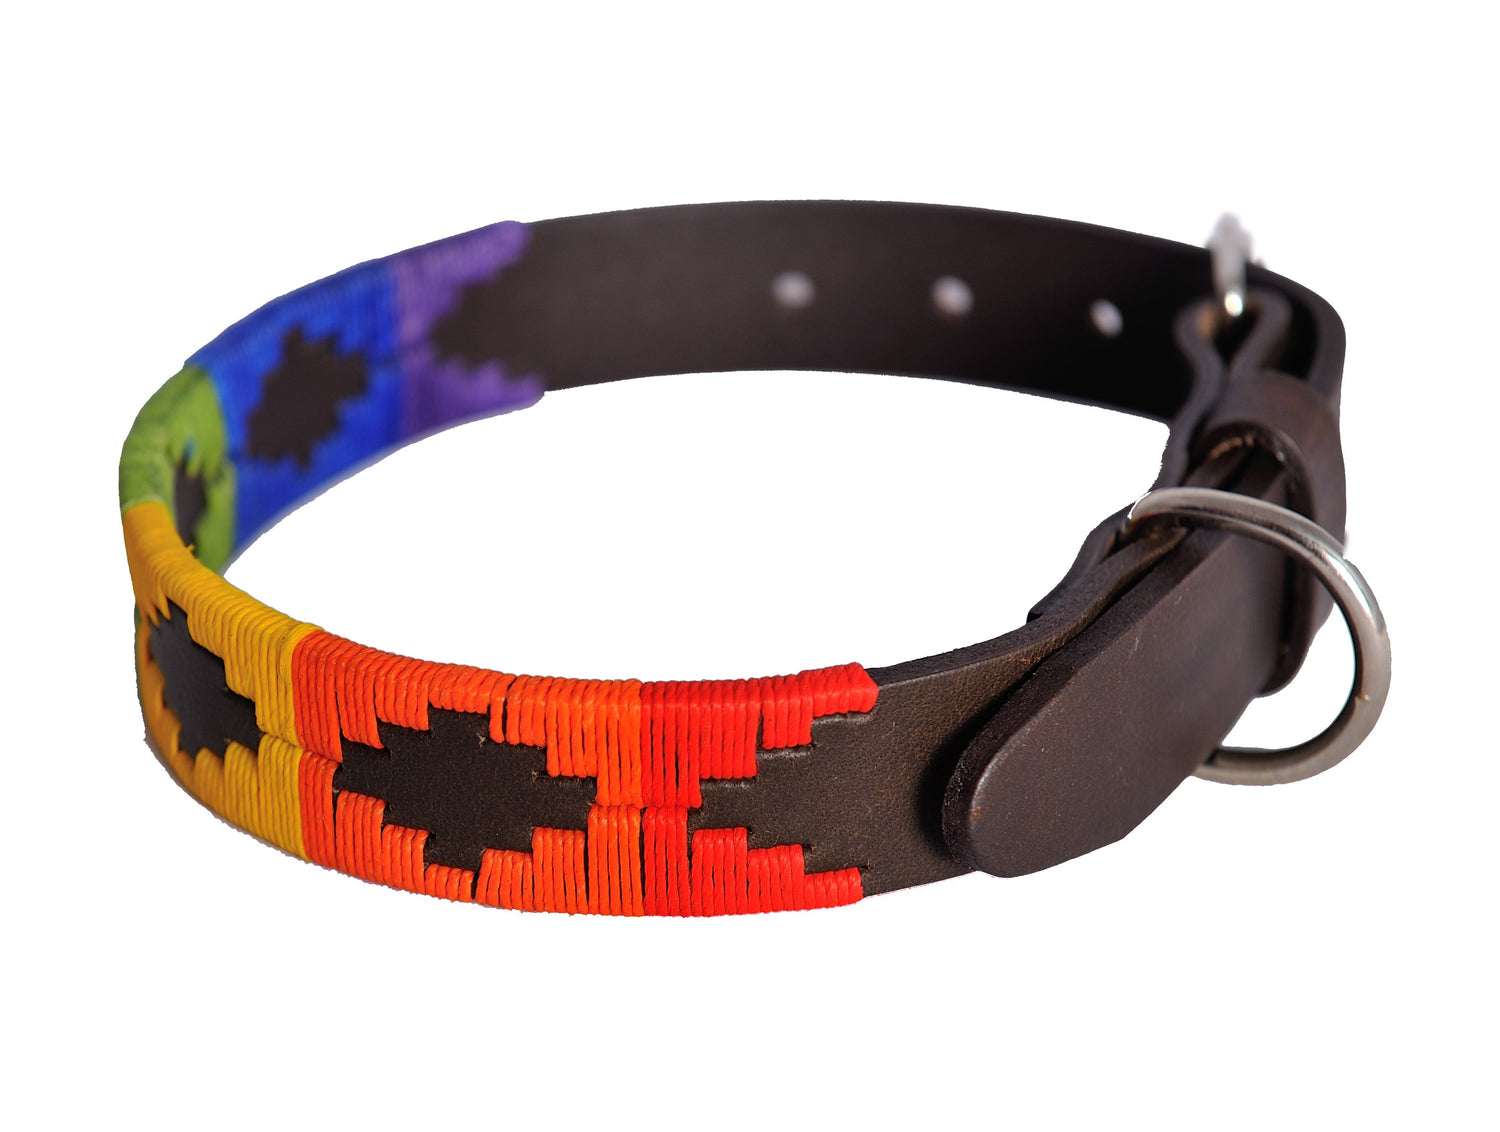 Polo Belt Style Dog Collar - Rainbow